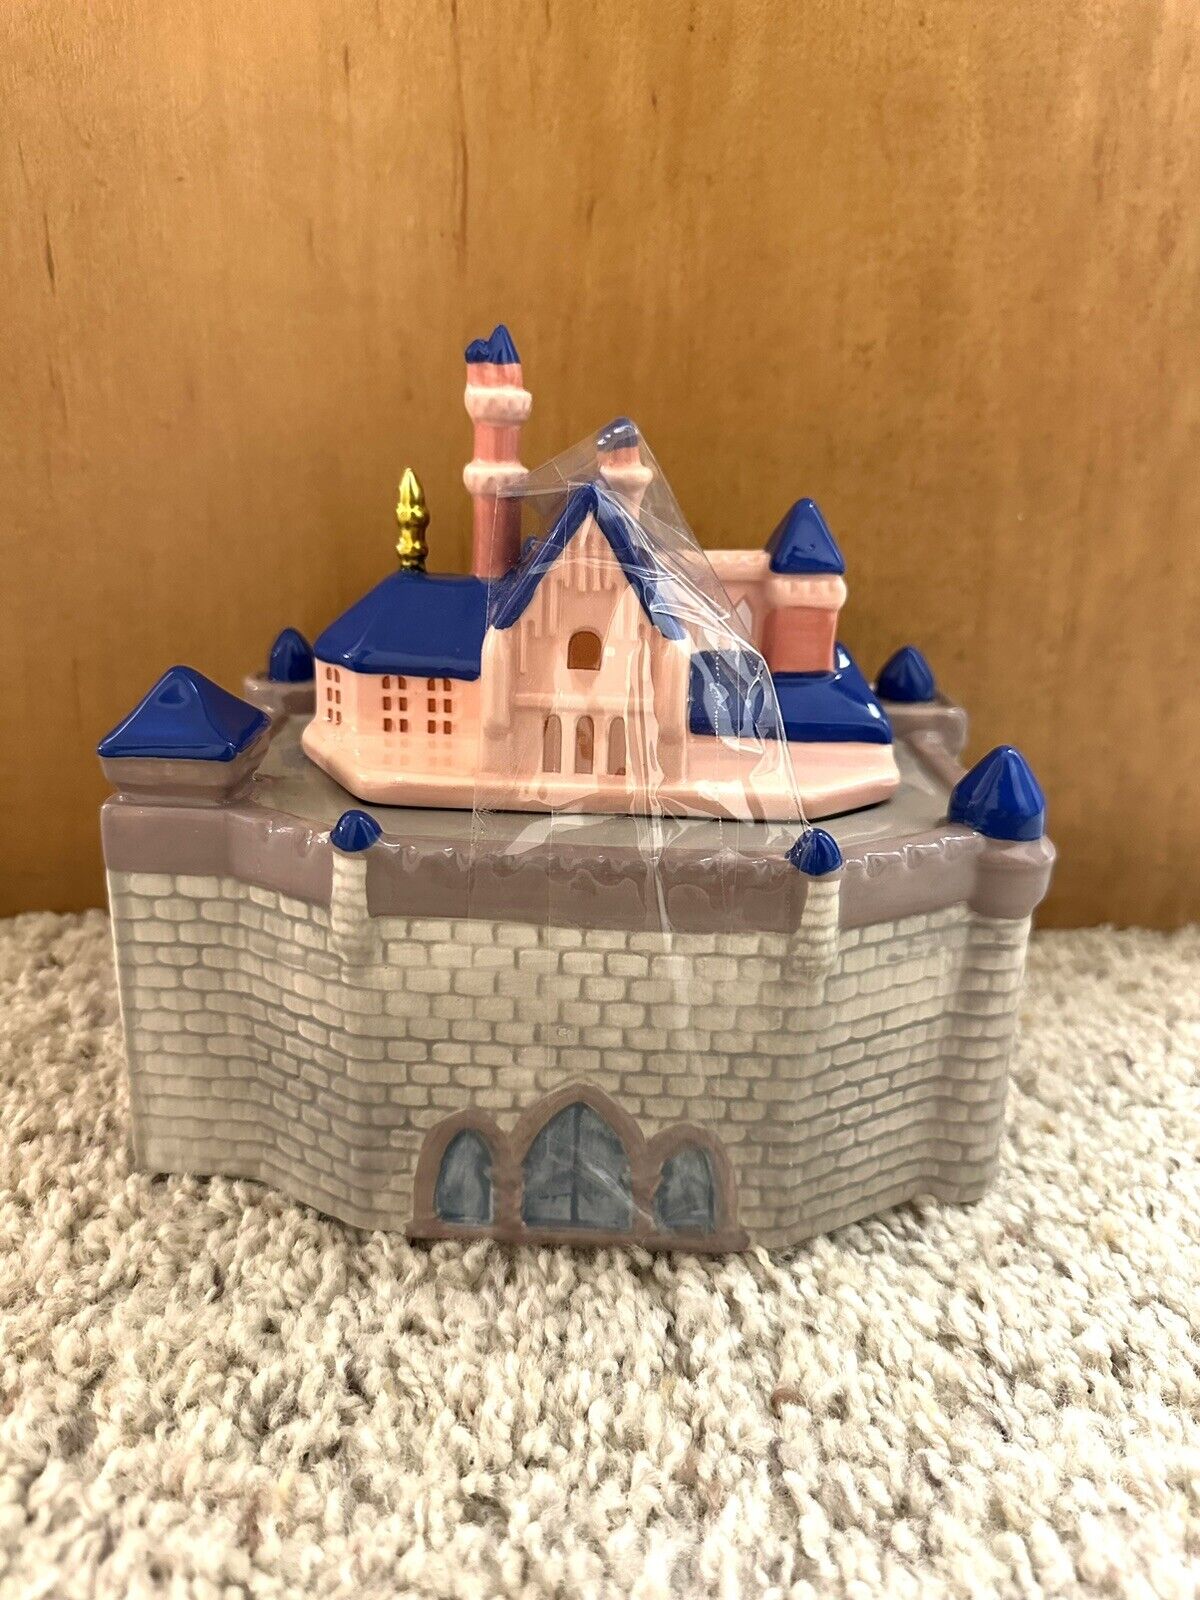 2021 Disney Parks Disneyland Resort Ceramic Sleeping Beauty Castle Cookie Jar